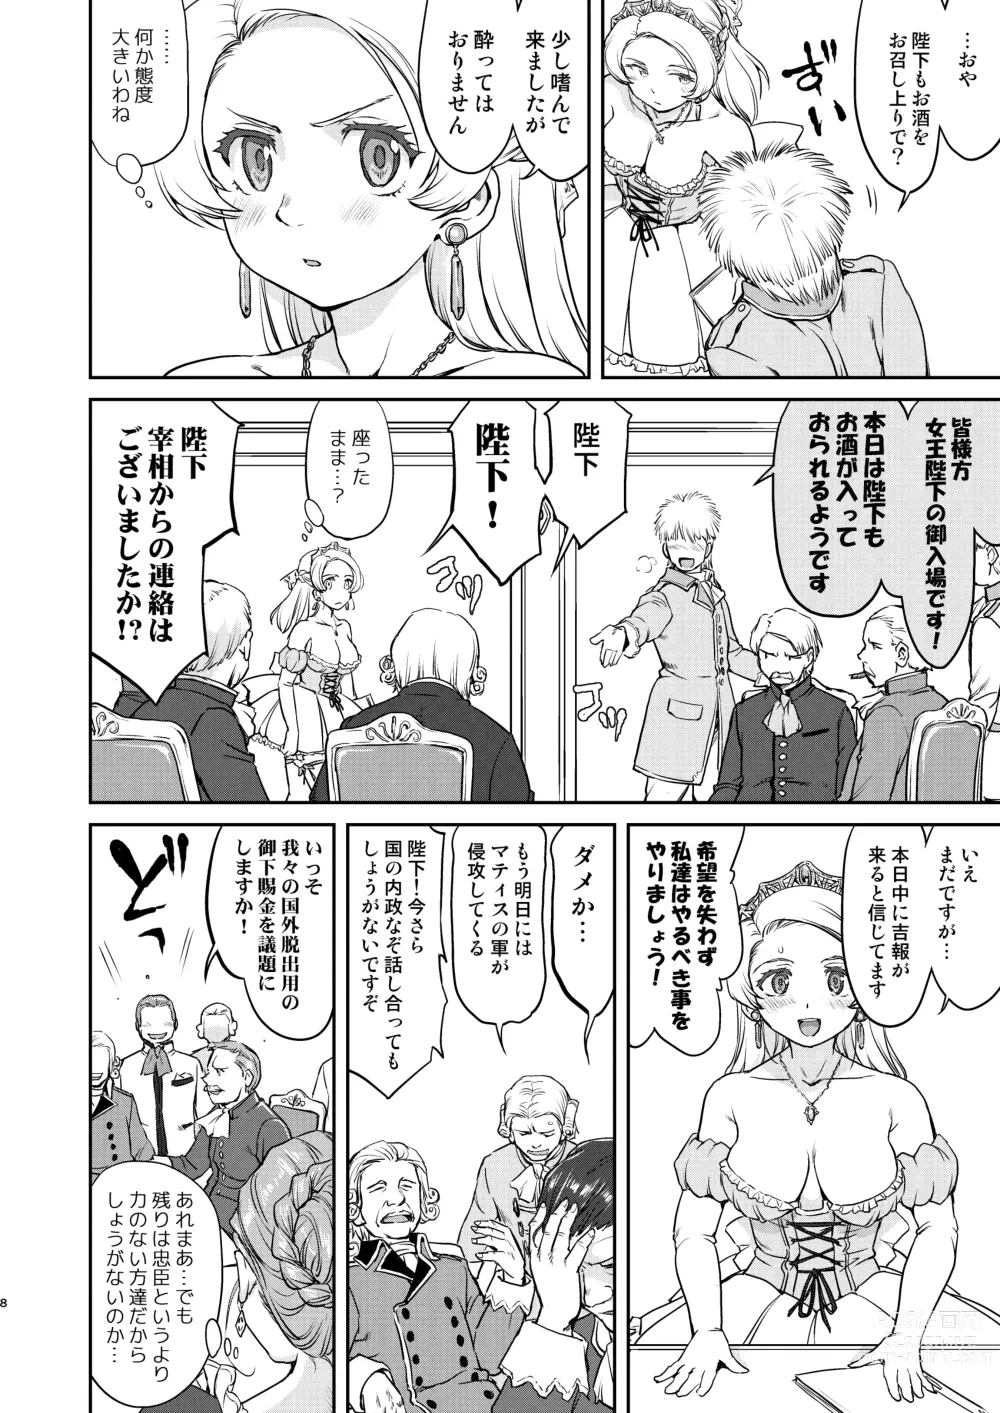 Page 8 of doujinshi Joou Heika no Koufuku Senryou Hen